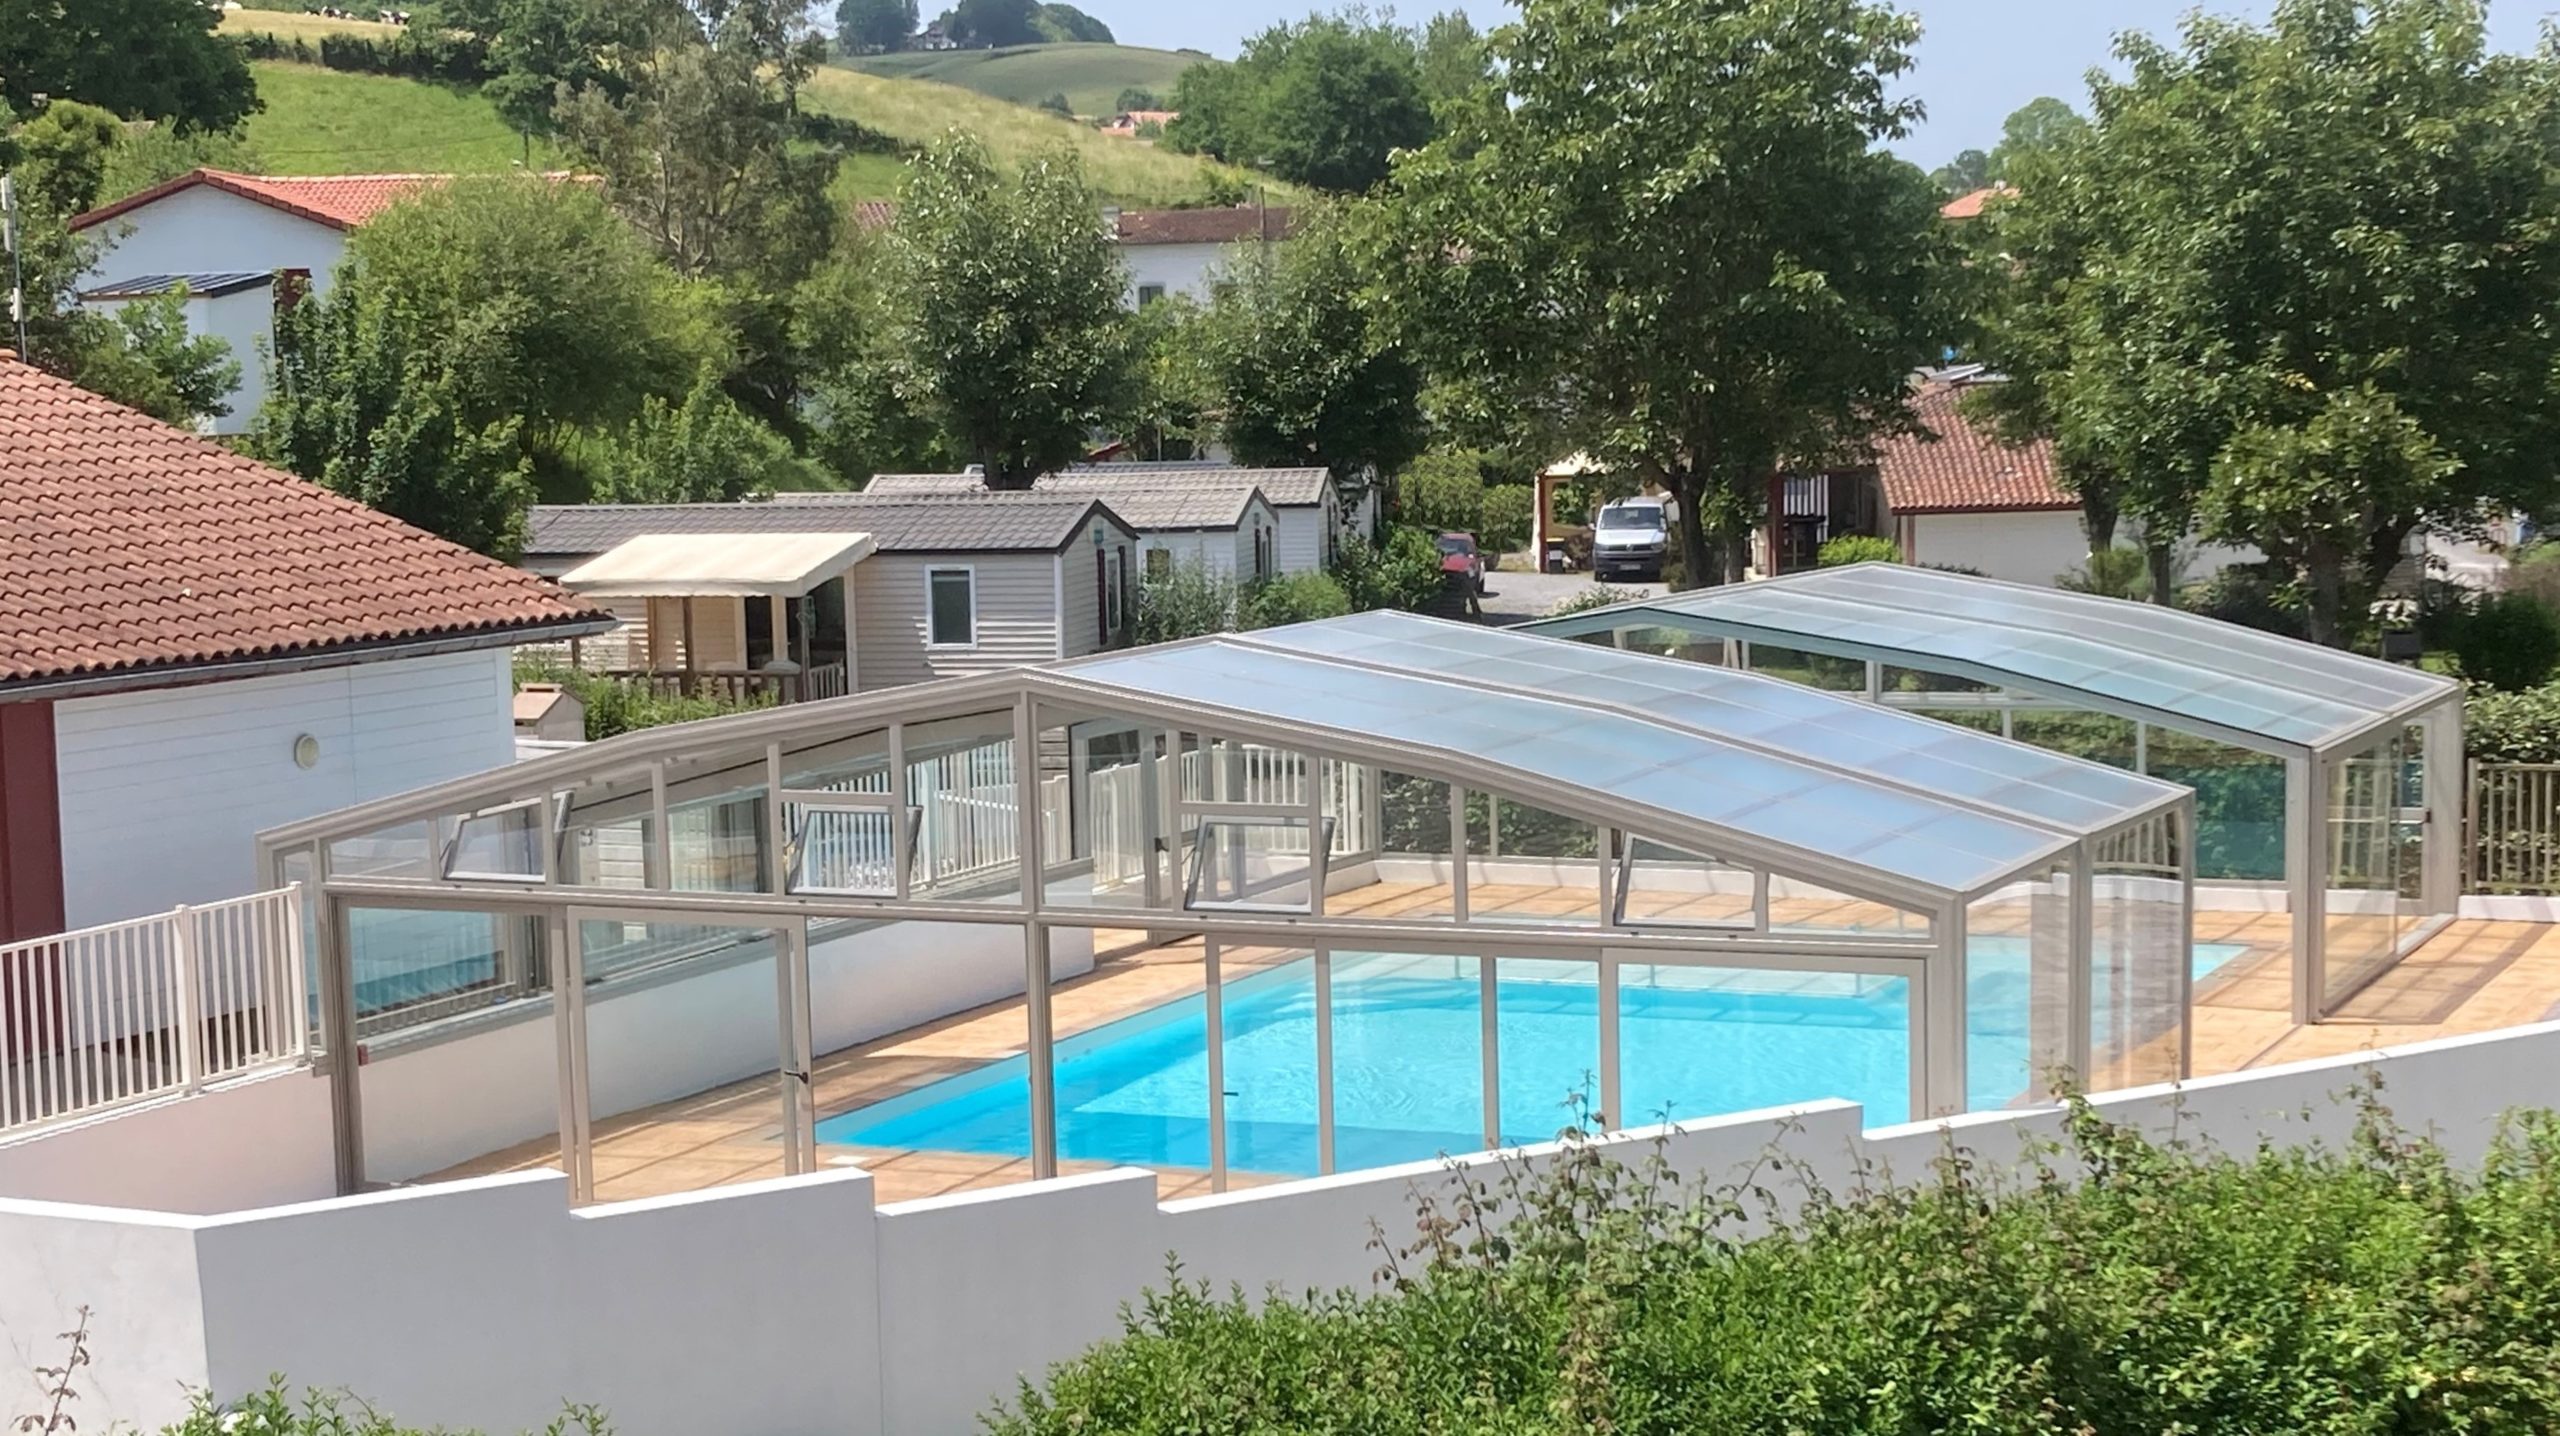 Profitez de la piscine couverte et chauffé lors de votre location au Pays Basque